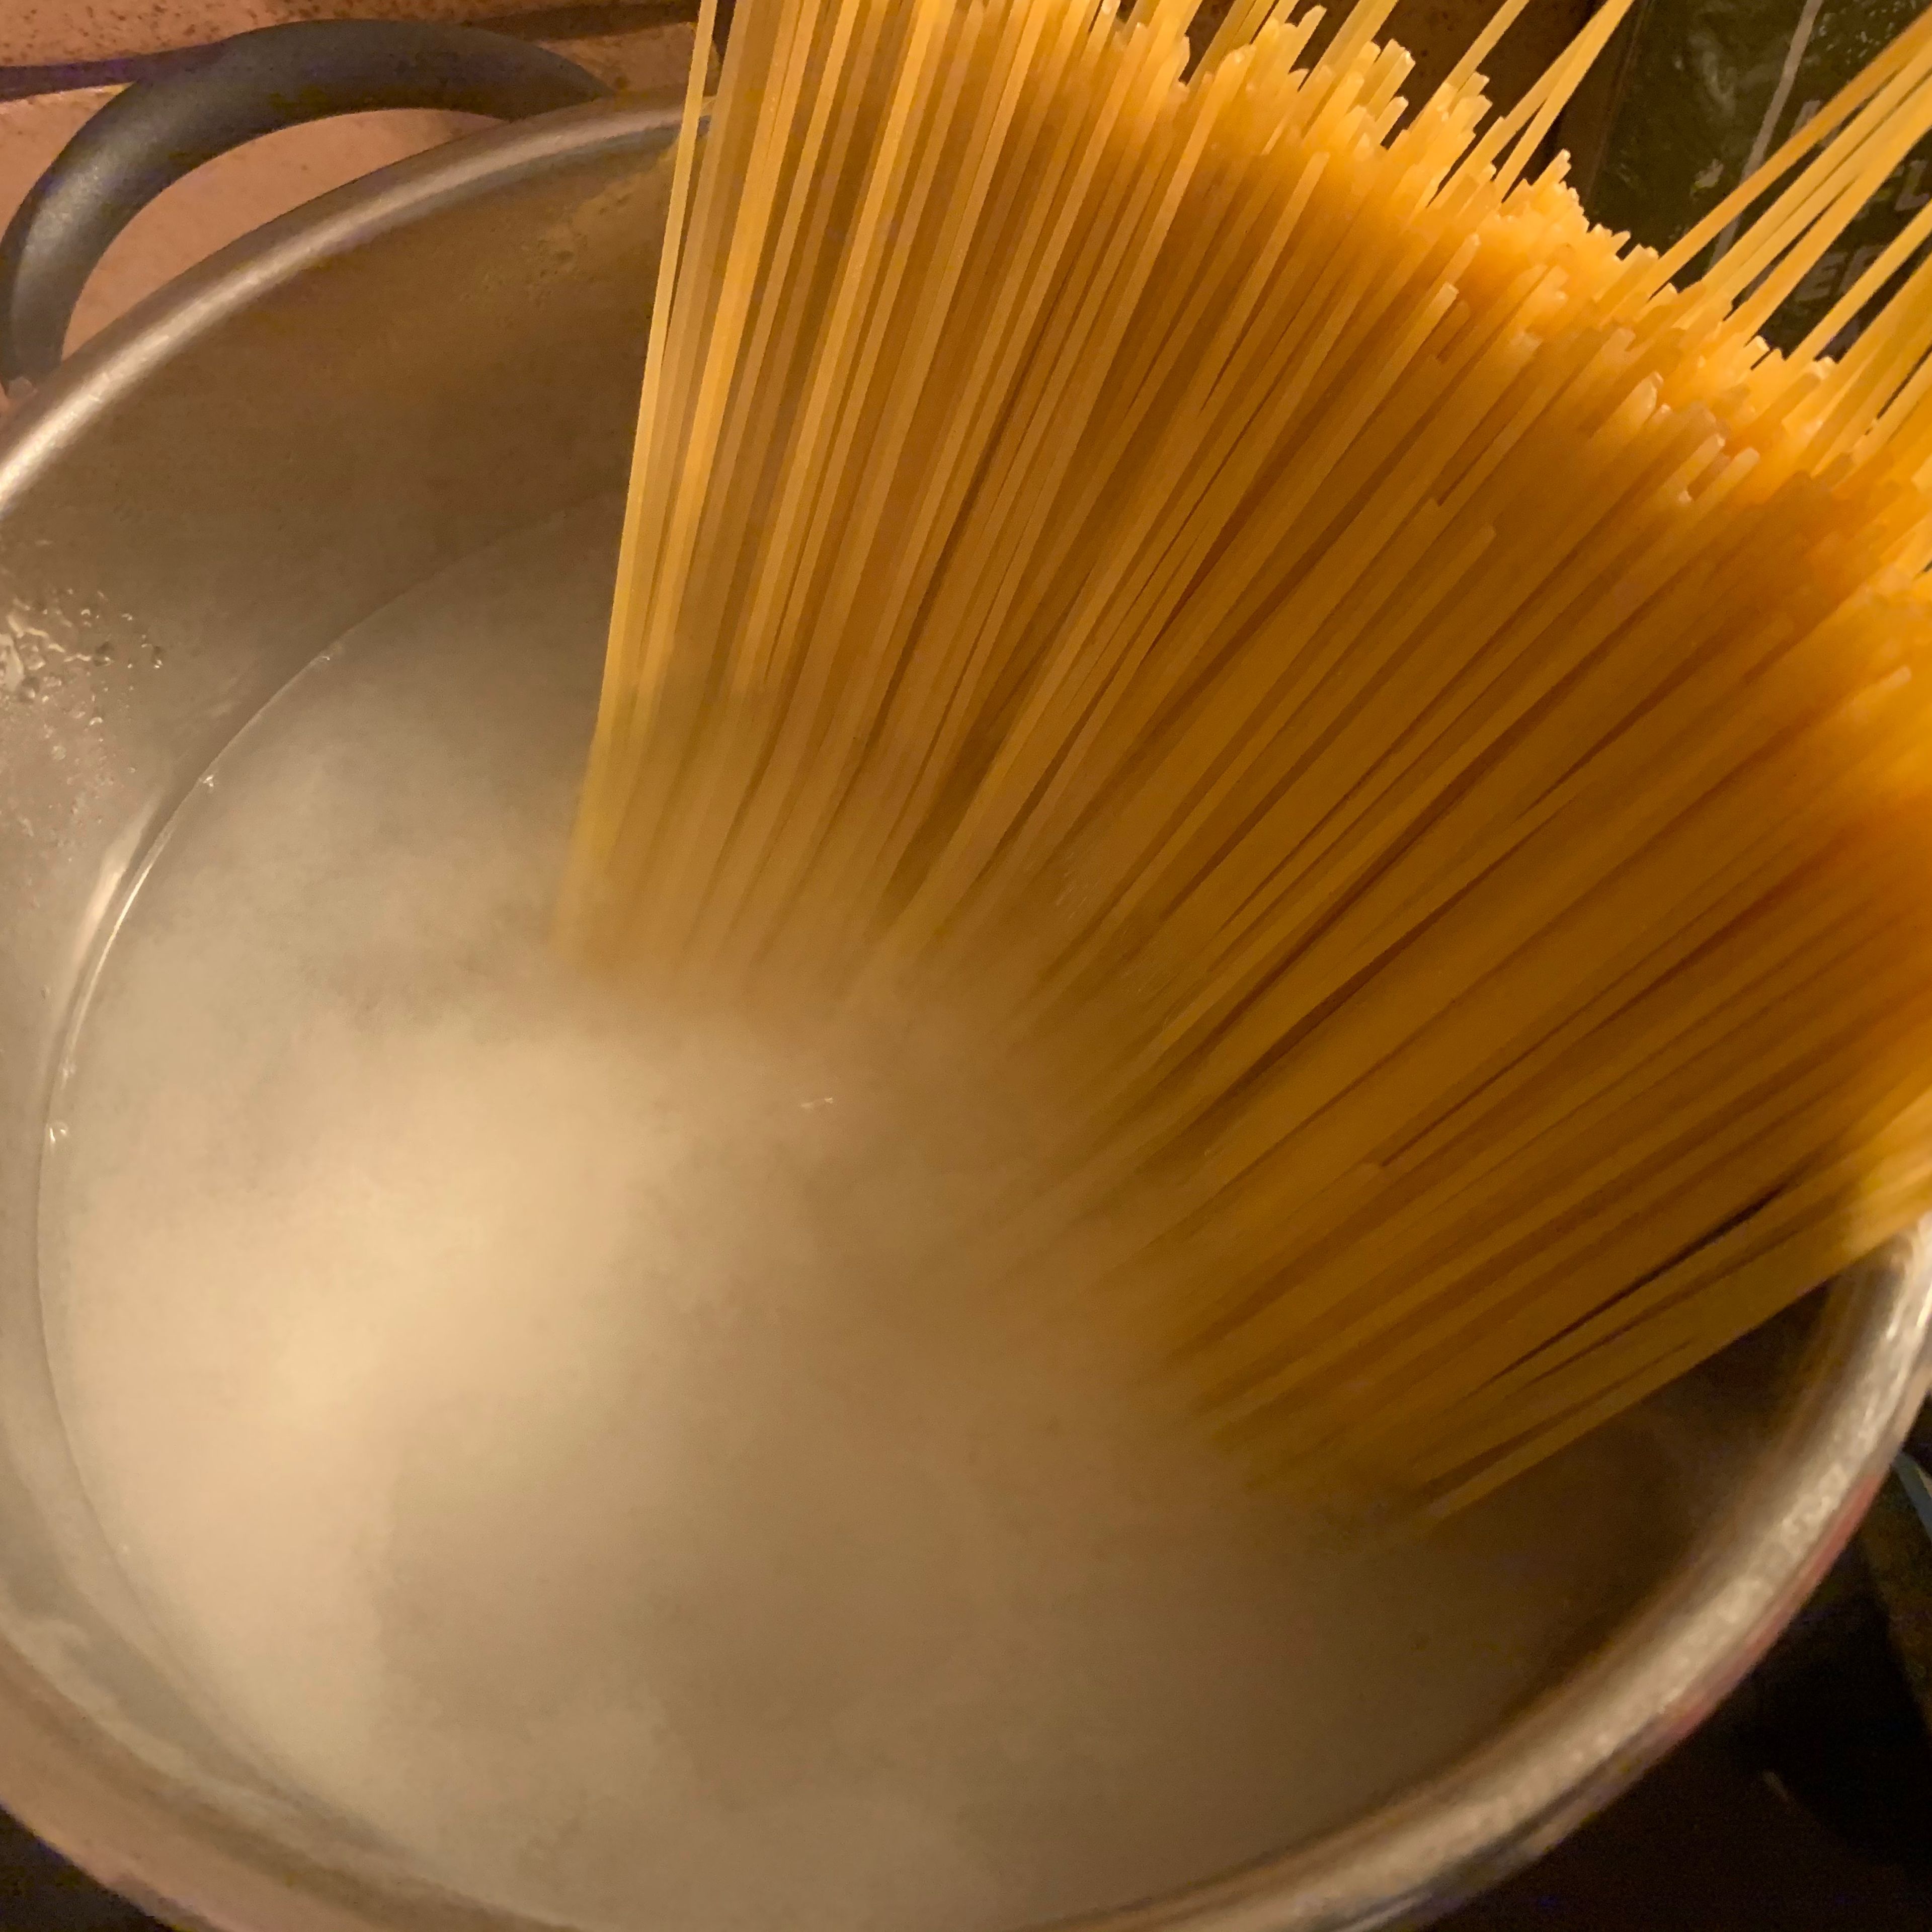 Zuerst Wasser für die Spaghetti aufsetzen und während der anderen Schritte nach Packungsanleitung kochen